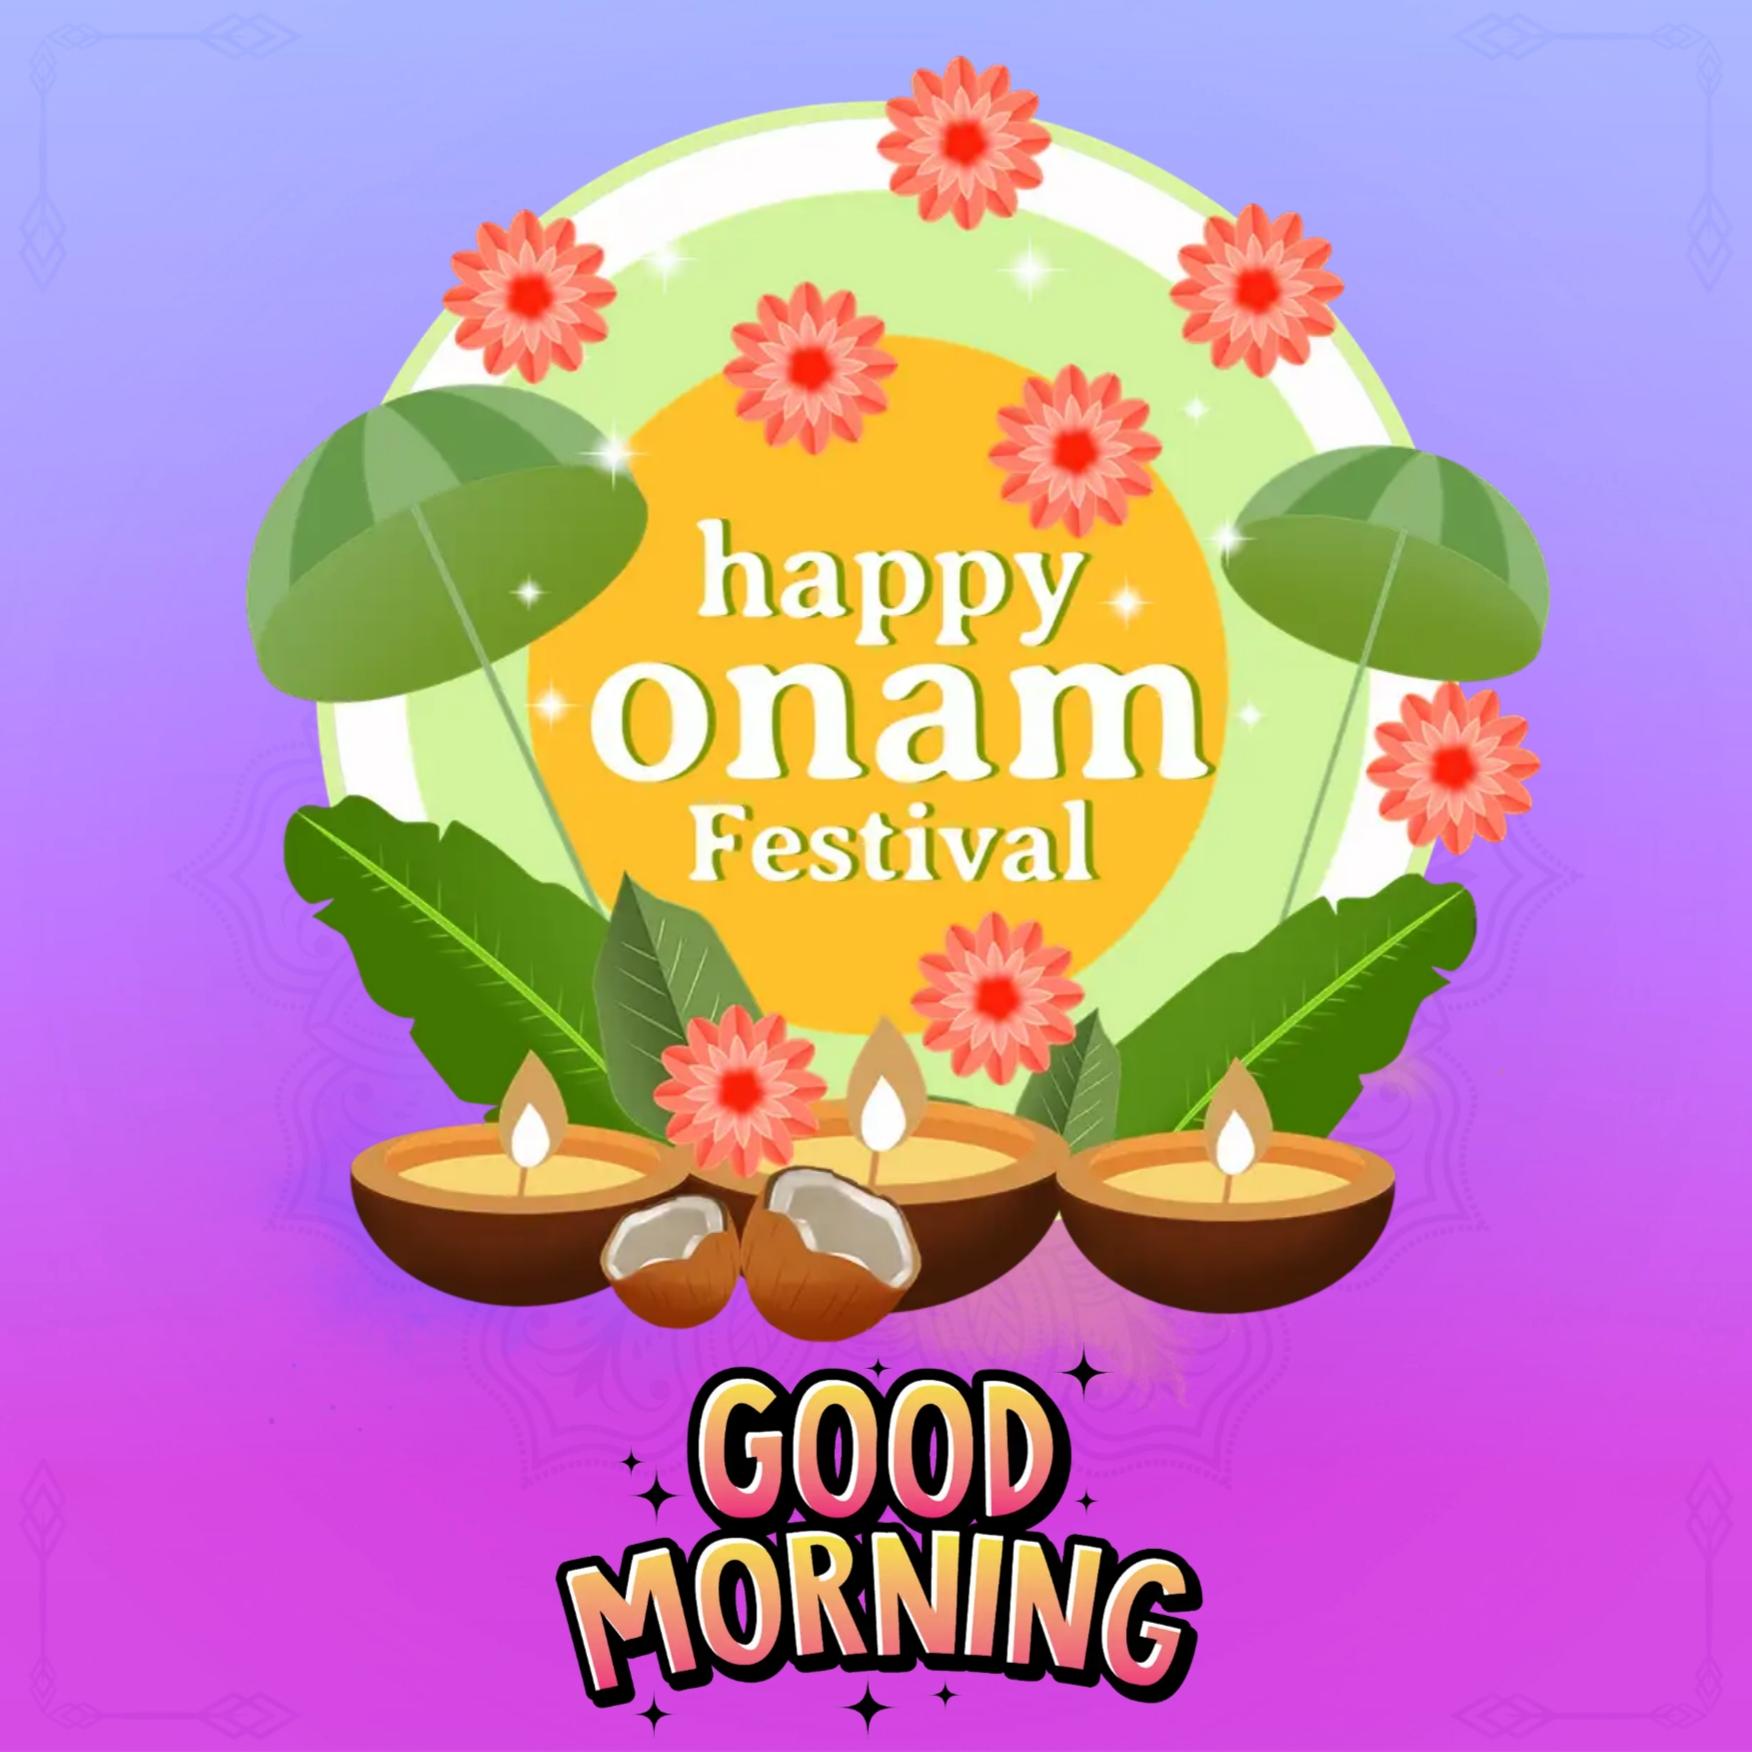 Happy Onam Good Morning Images